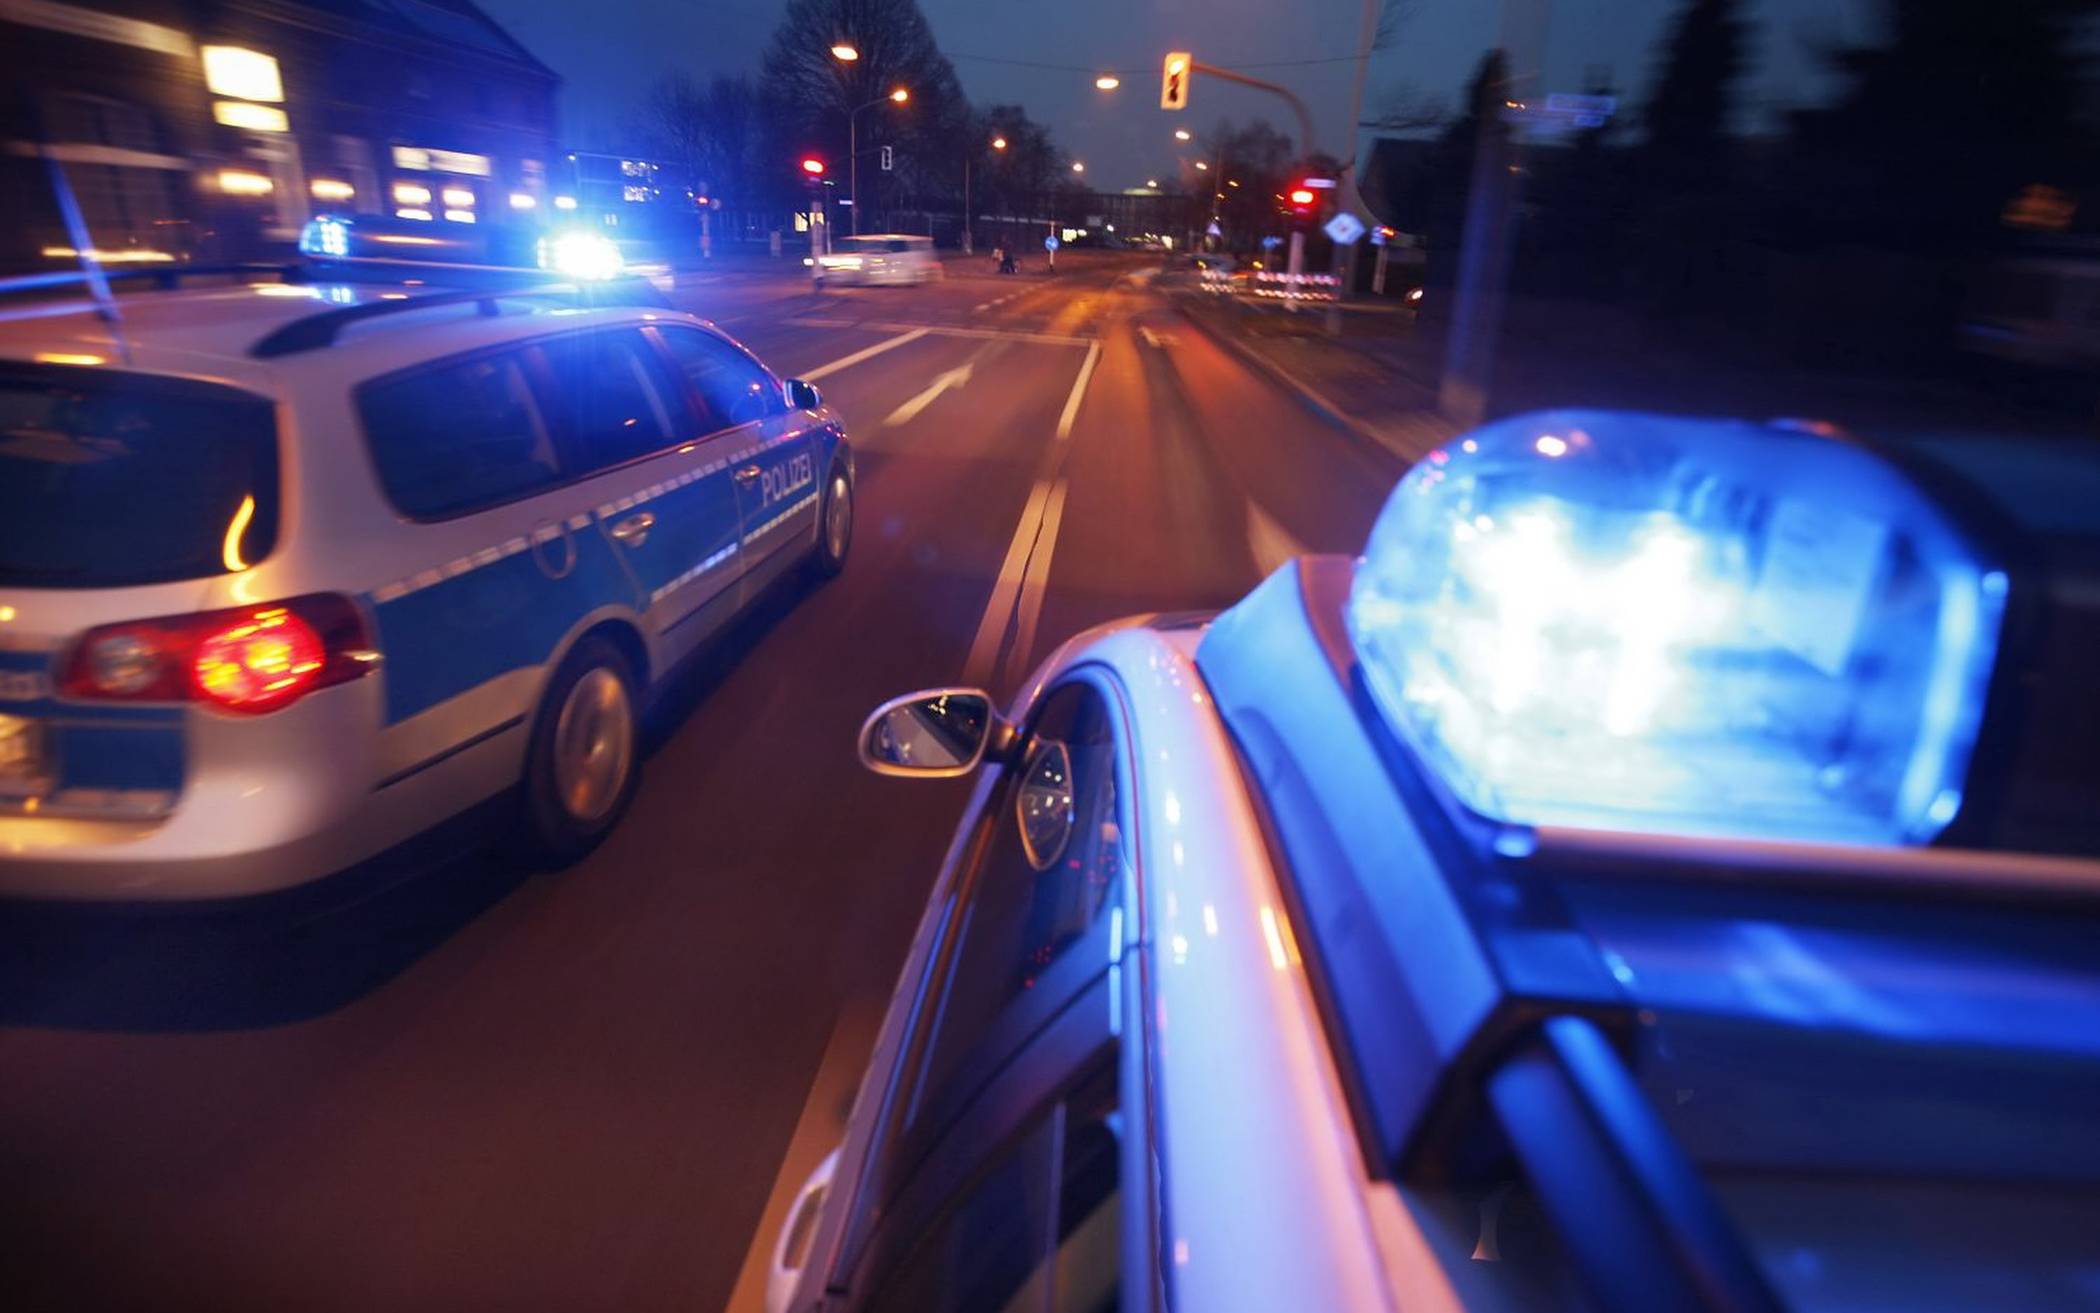 Schwerverletzter nach Schlägerei - Polizei sucht Zeugen